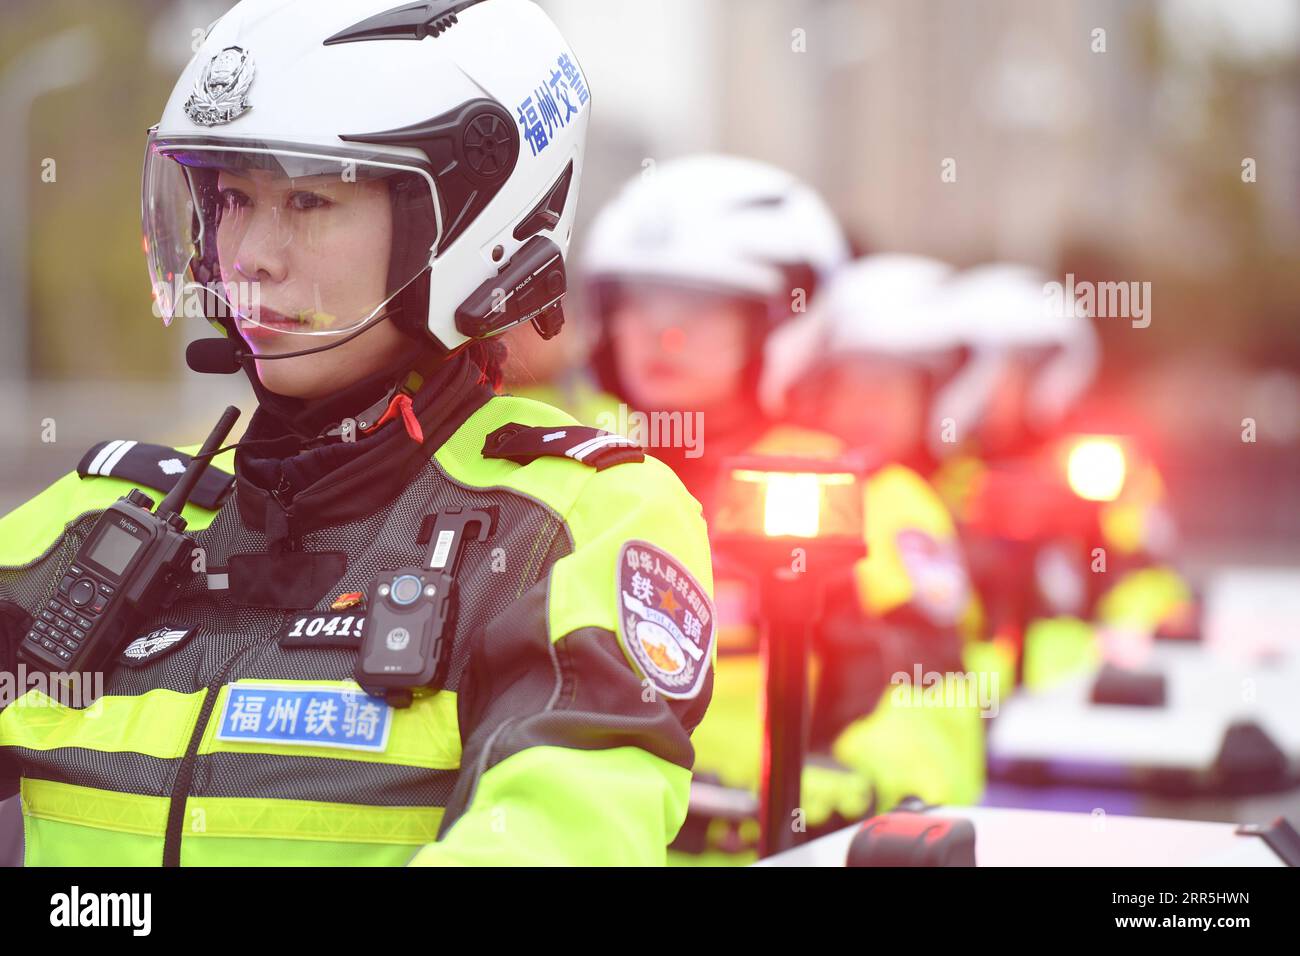 210108 -- FUZHOU, 8 gennaio 2021 -- membri di un team motociclistico poliziotto pattuglia su una strada nella città di Fuzhou, provincia del Fujian della Cina sud-orientale, 7 gennaio 2021. Il primo team motociclistico della città è stato istituito pochi giorni prima dell'imminente primo giorno della polizia cinese, che è fissato il 10 gennaio 2021. Con un'altezza media fino a 1,7 metri, queste motociclisti in uniformi di bellezza sono ben addestrate per essere in grado di guidare la motocicletta della polizia di circa 300 kg per svolgere il loro lavoro, senza mai perdere di attirare attenzioni ovunque vadano. Un mese fa, però, quelle giovani ragazze che lo conoscono Foto Stock